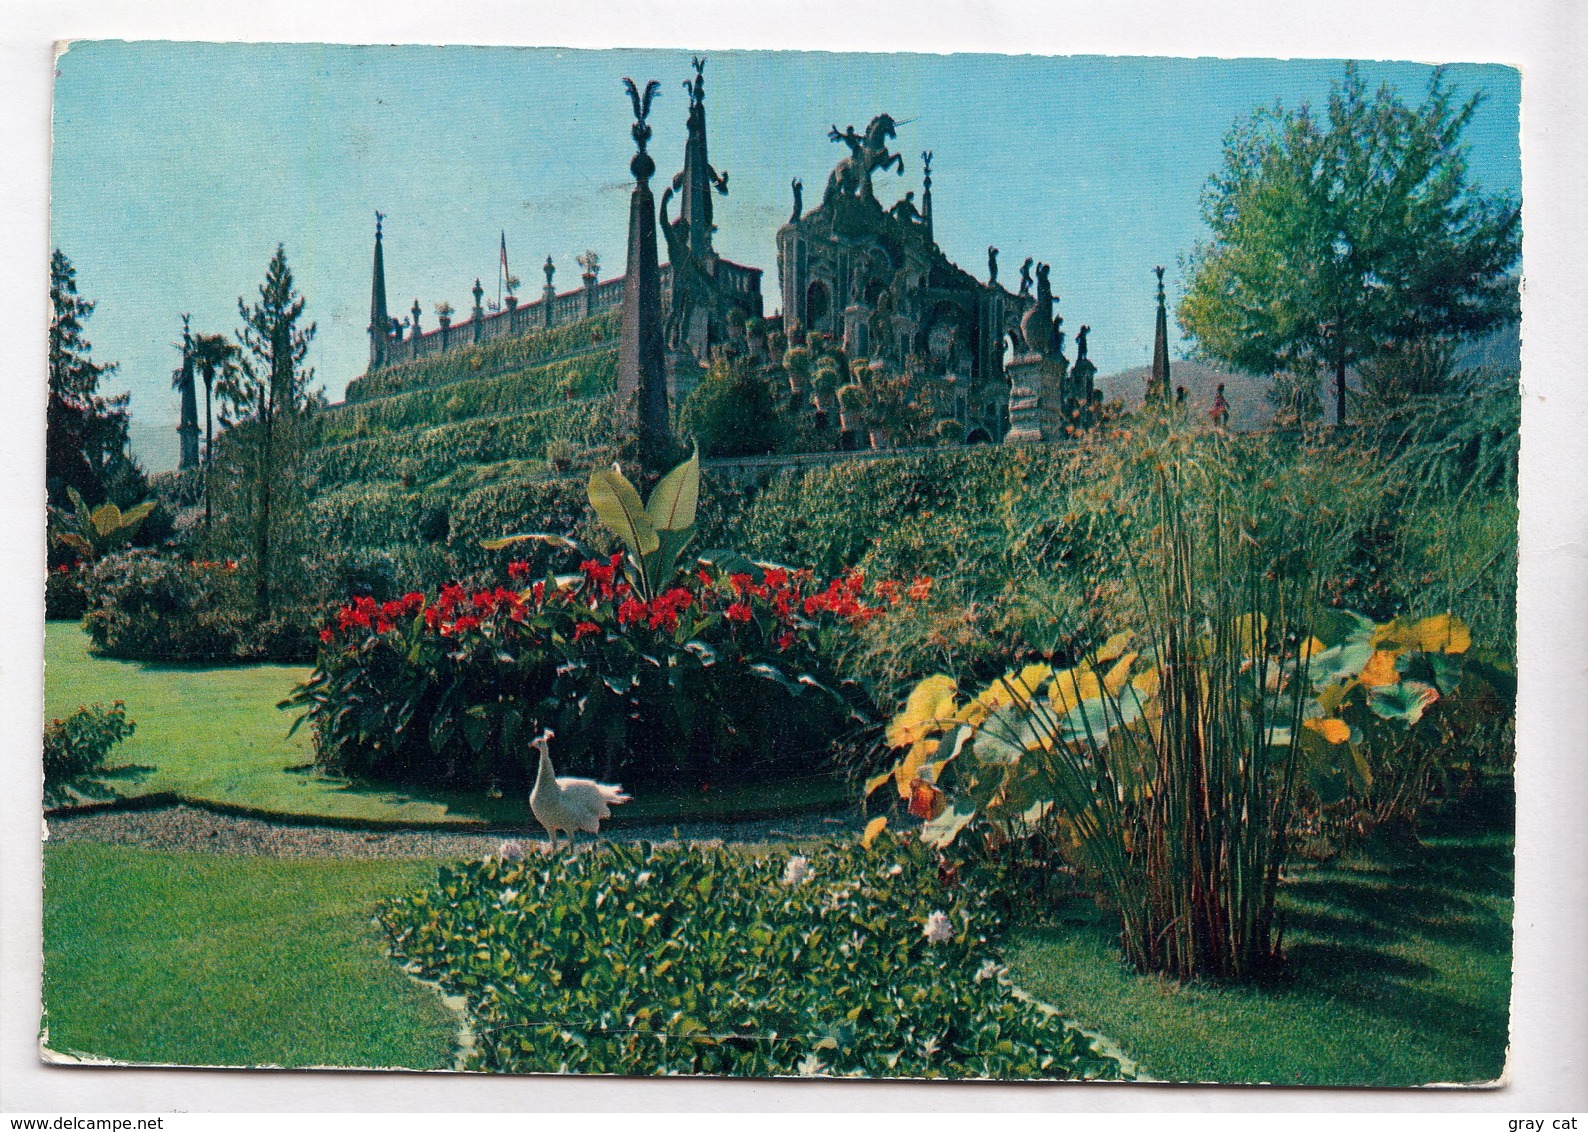 Lago Maggiore, Isola Bella, Giardino, The Garden, Used Postcard [22843] - Verbania